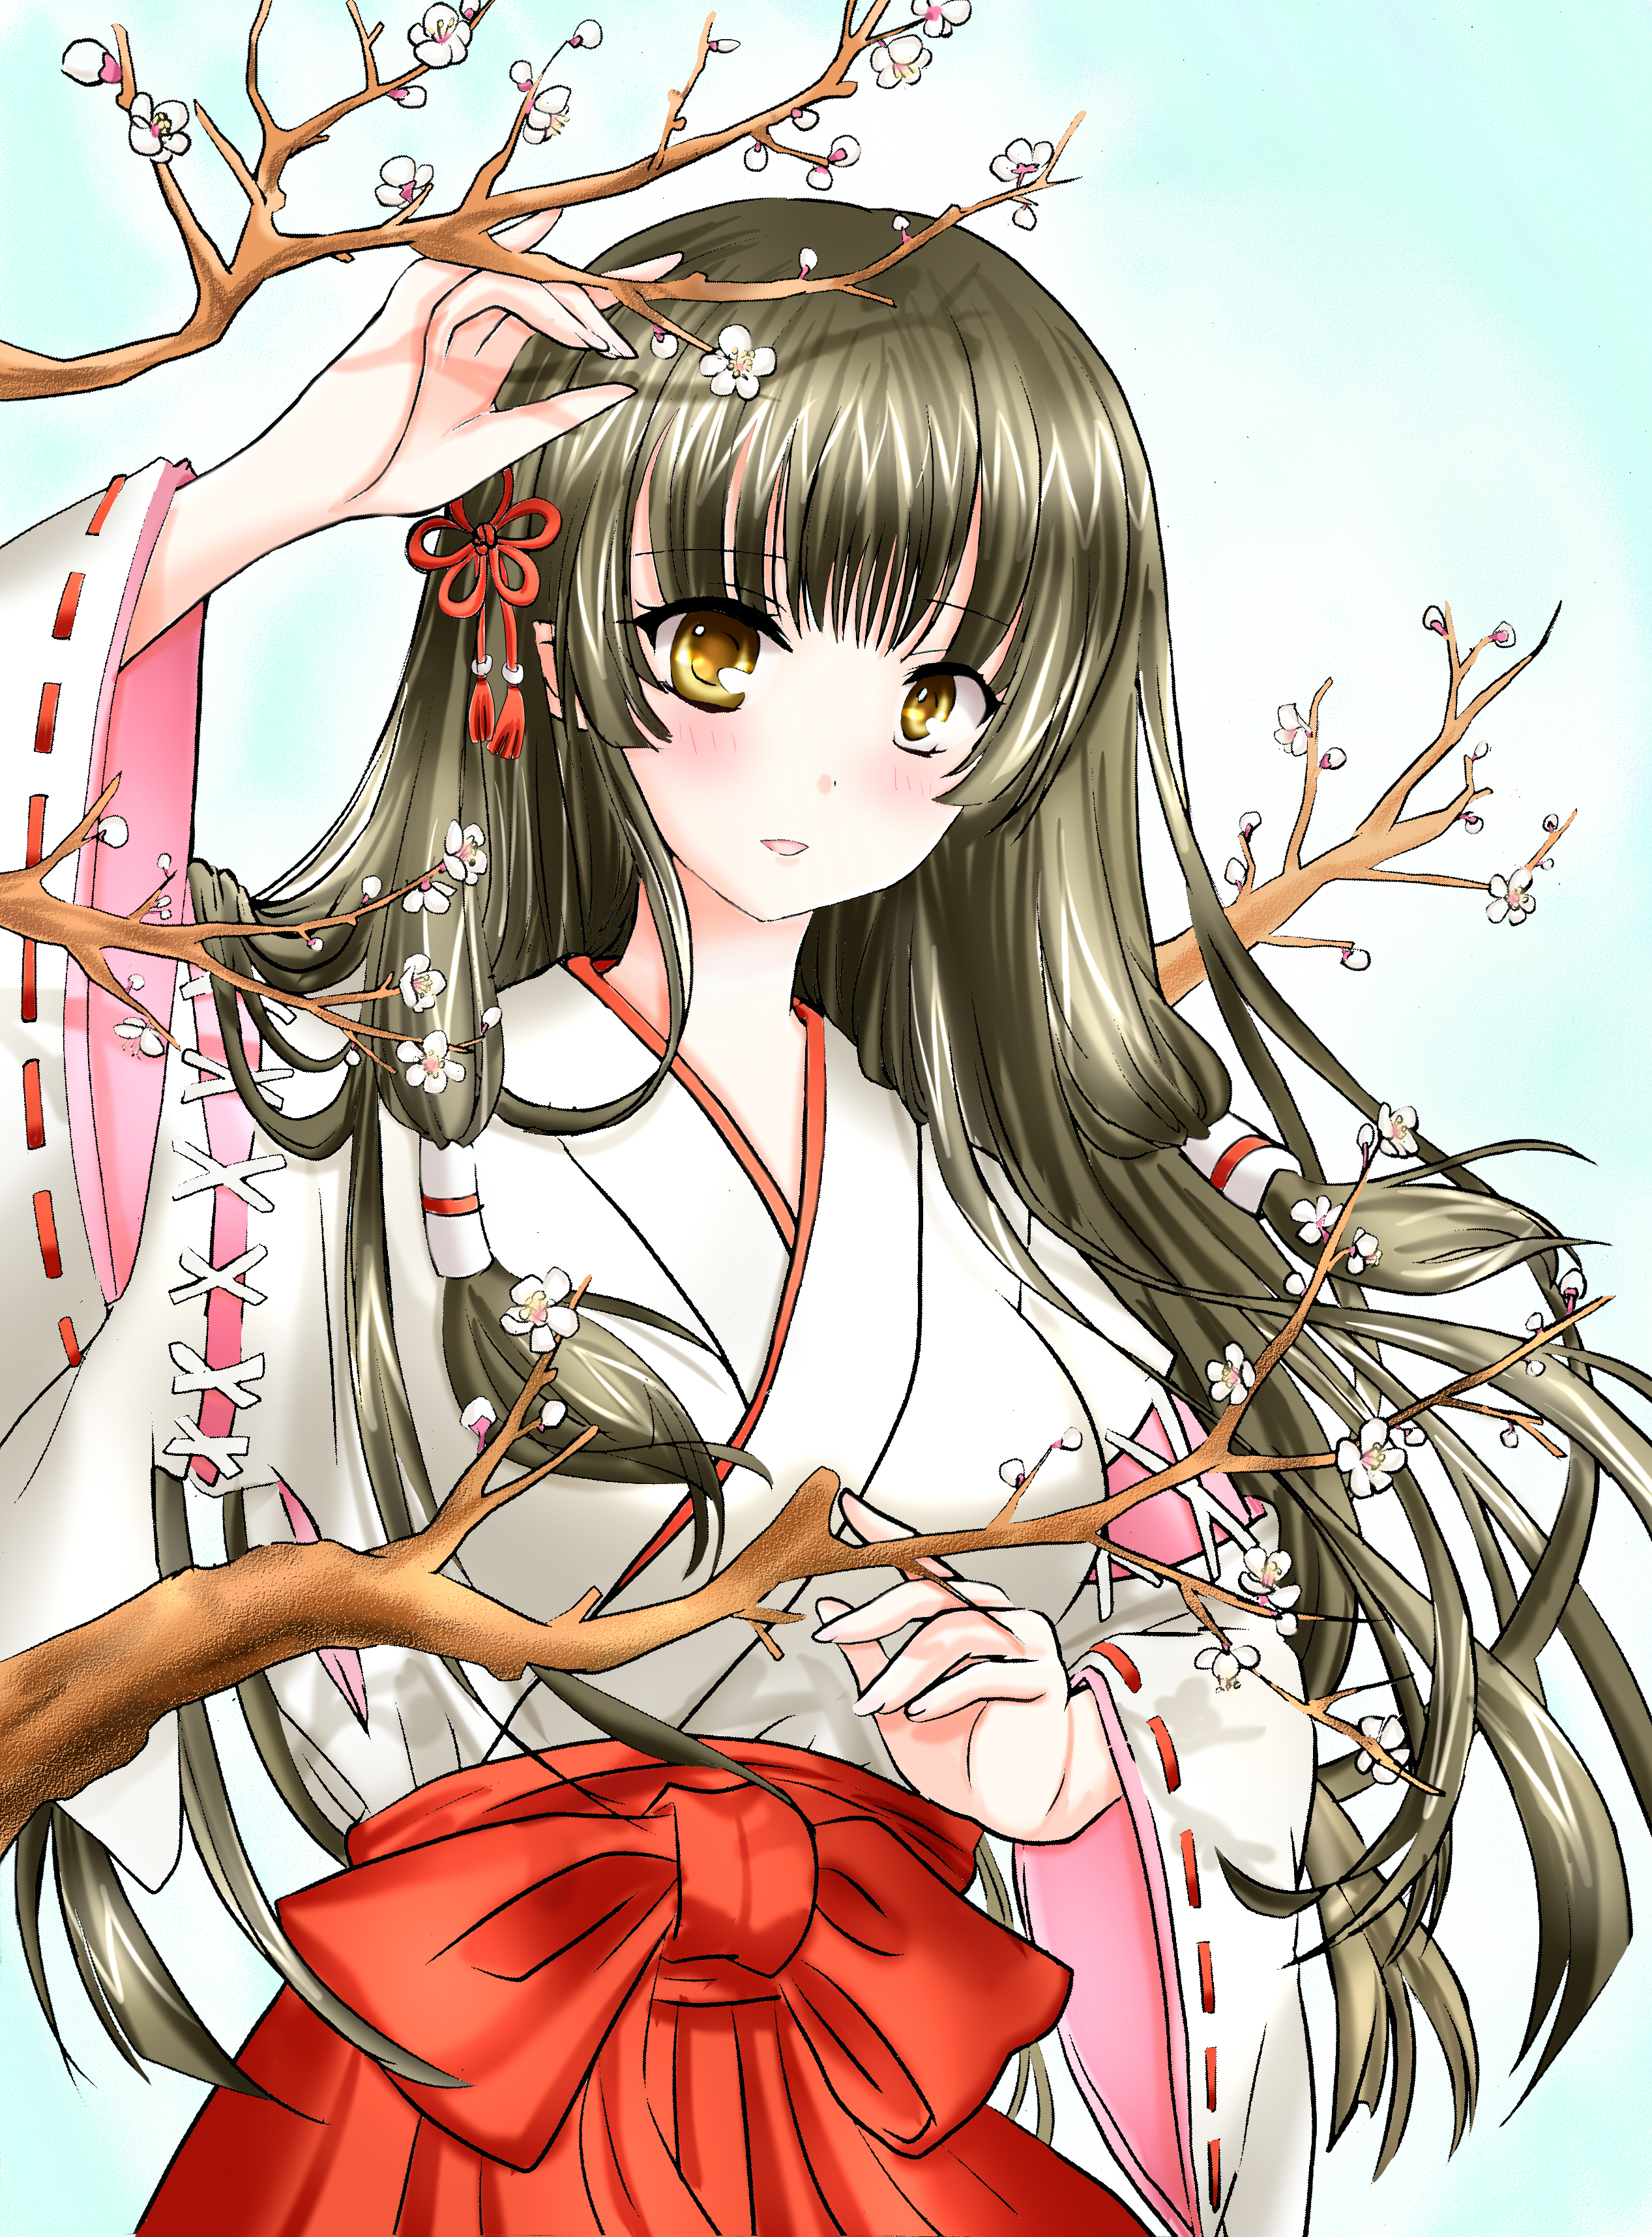 Girl Kimono Sakura Branches Anime Art